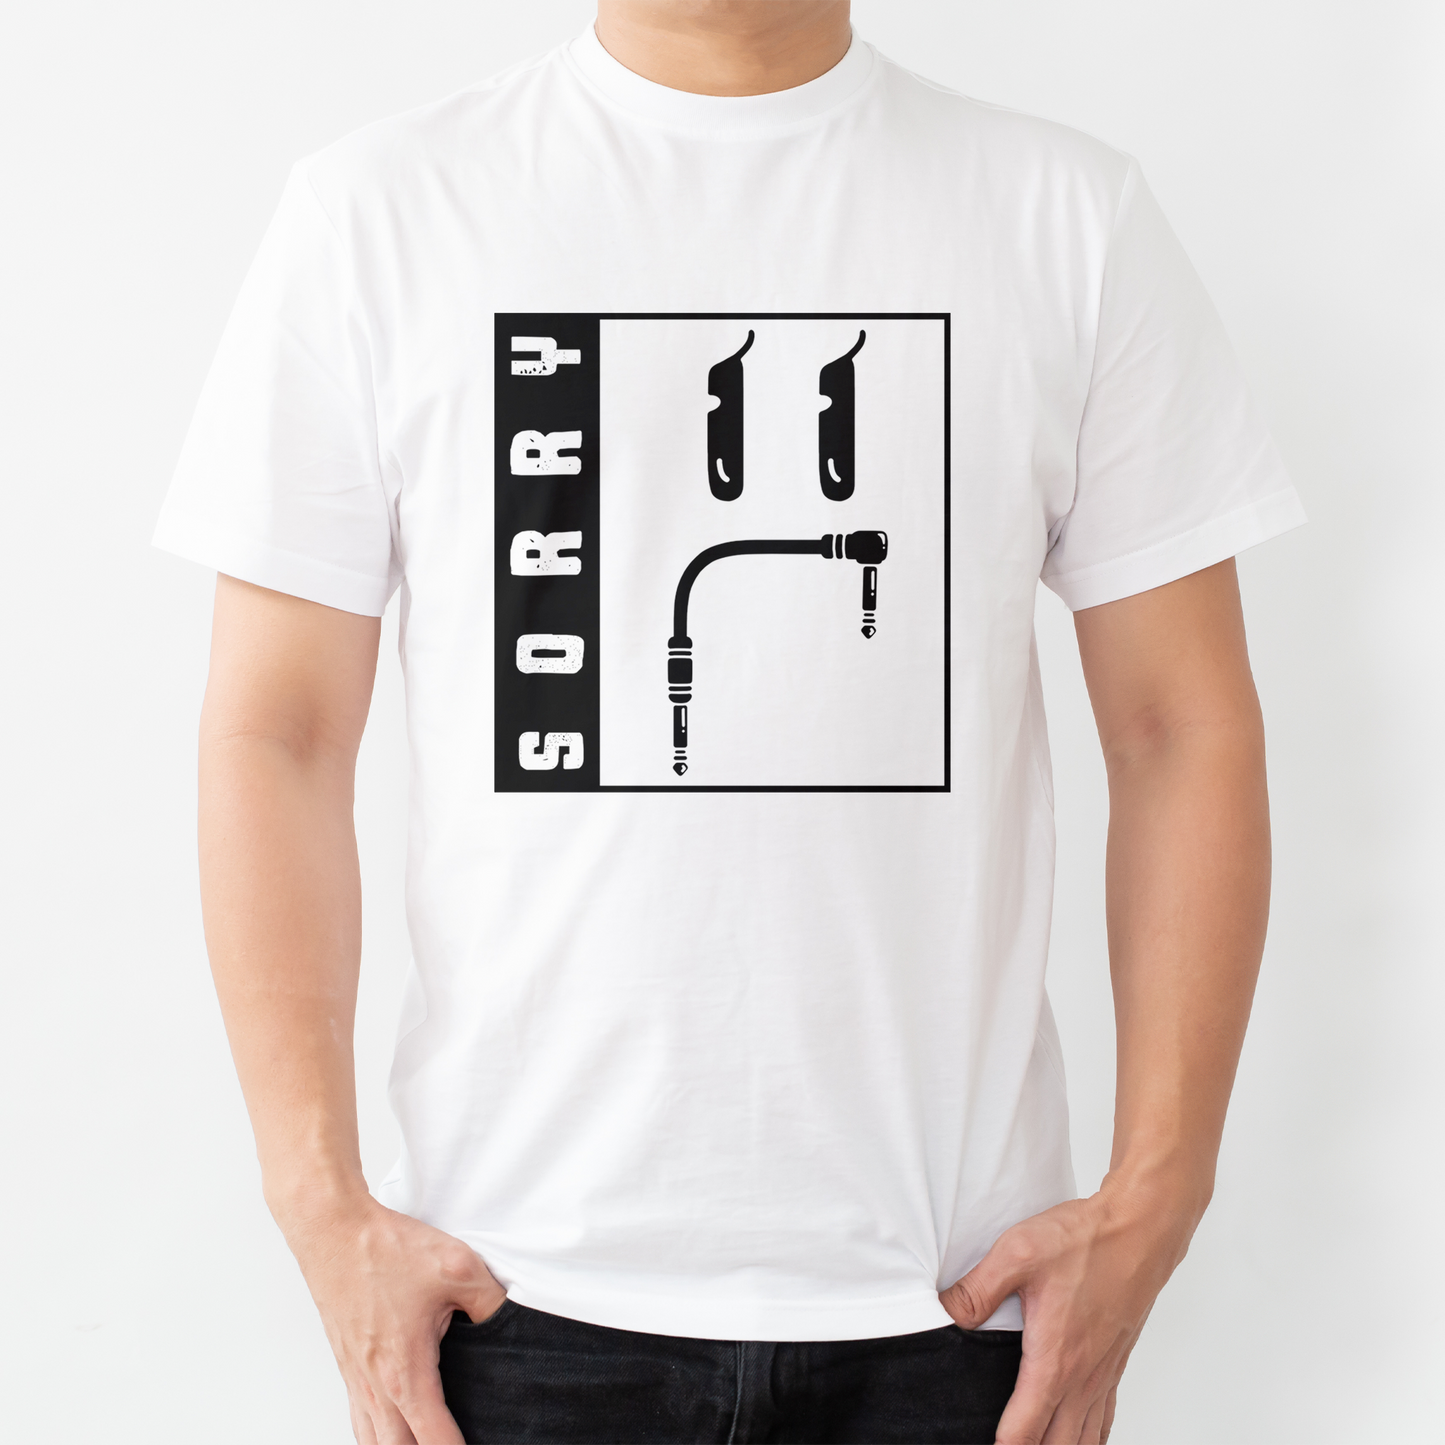 SORRY Cables™ Shirt! Square Logo